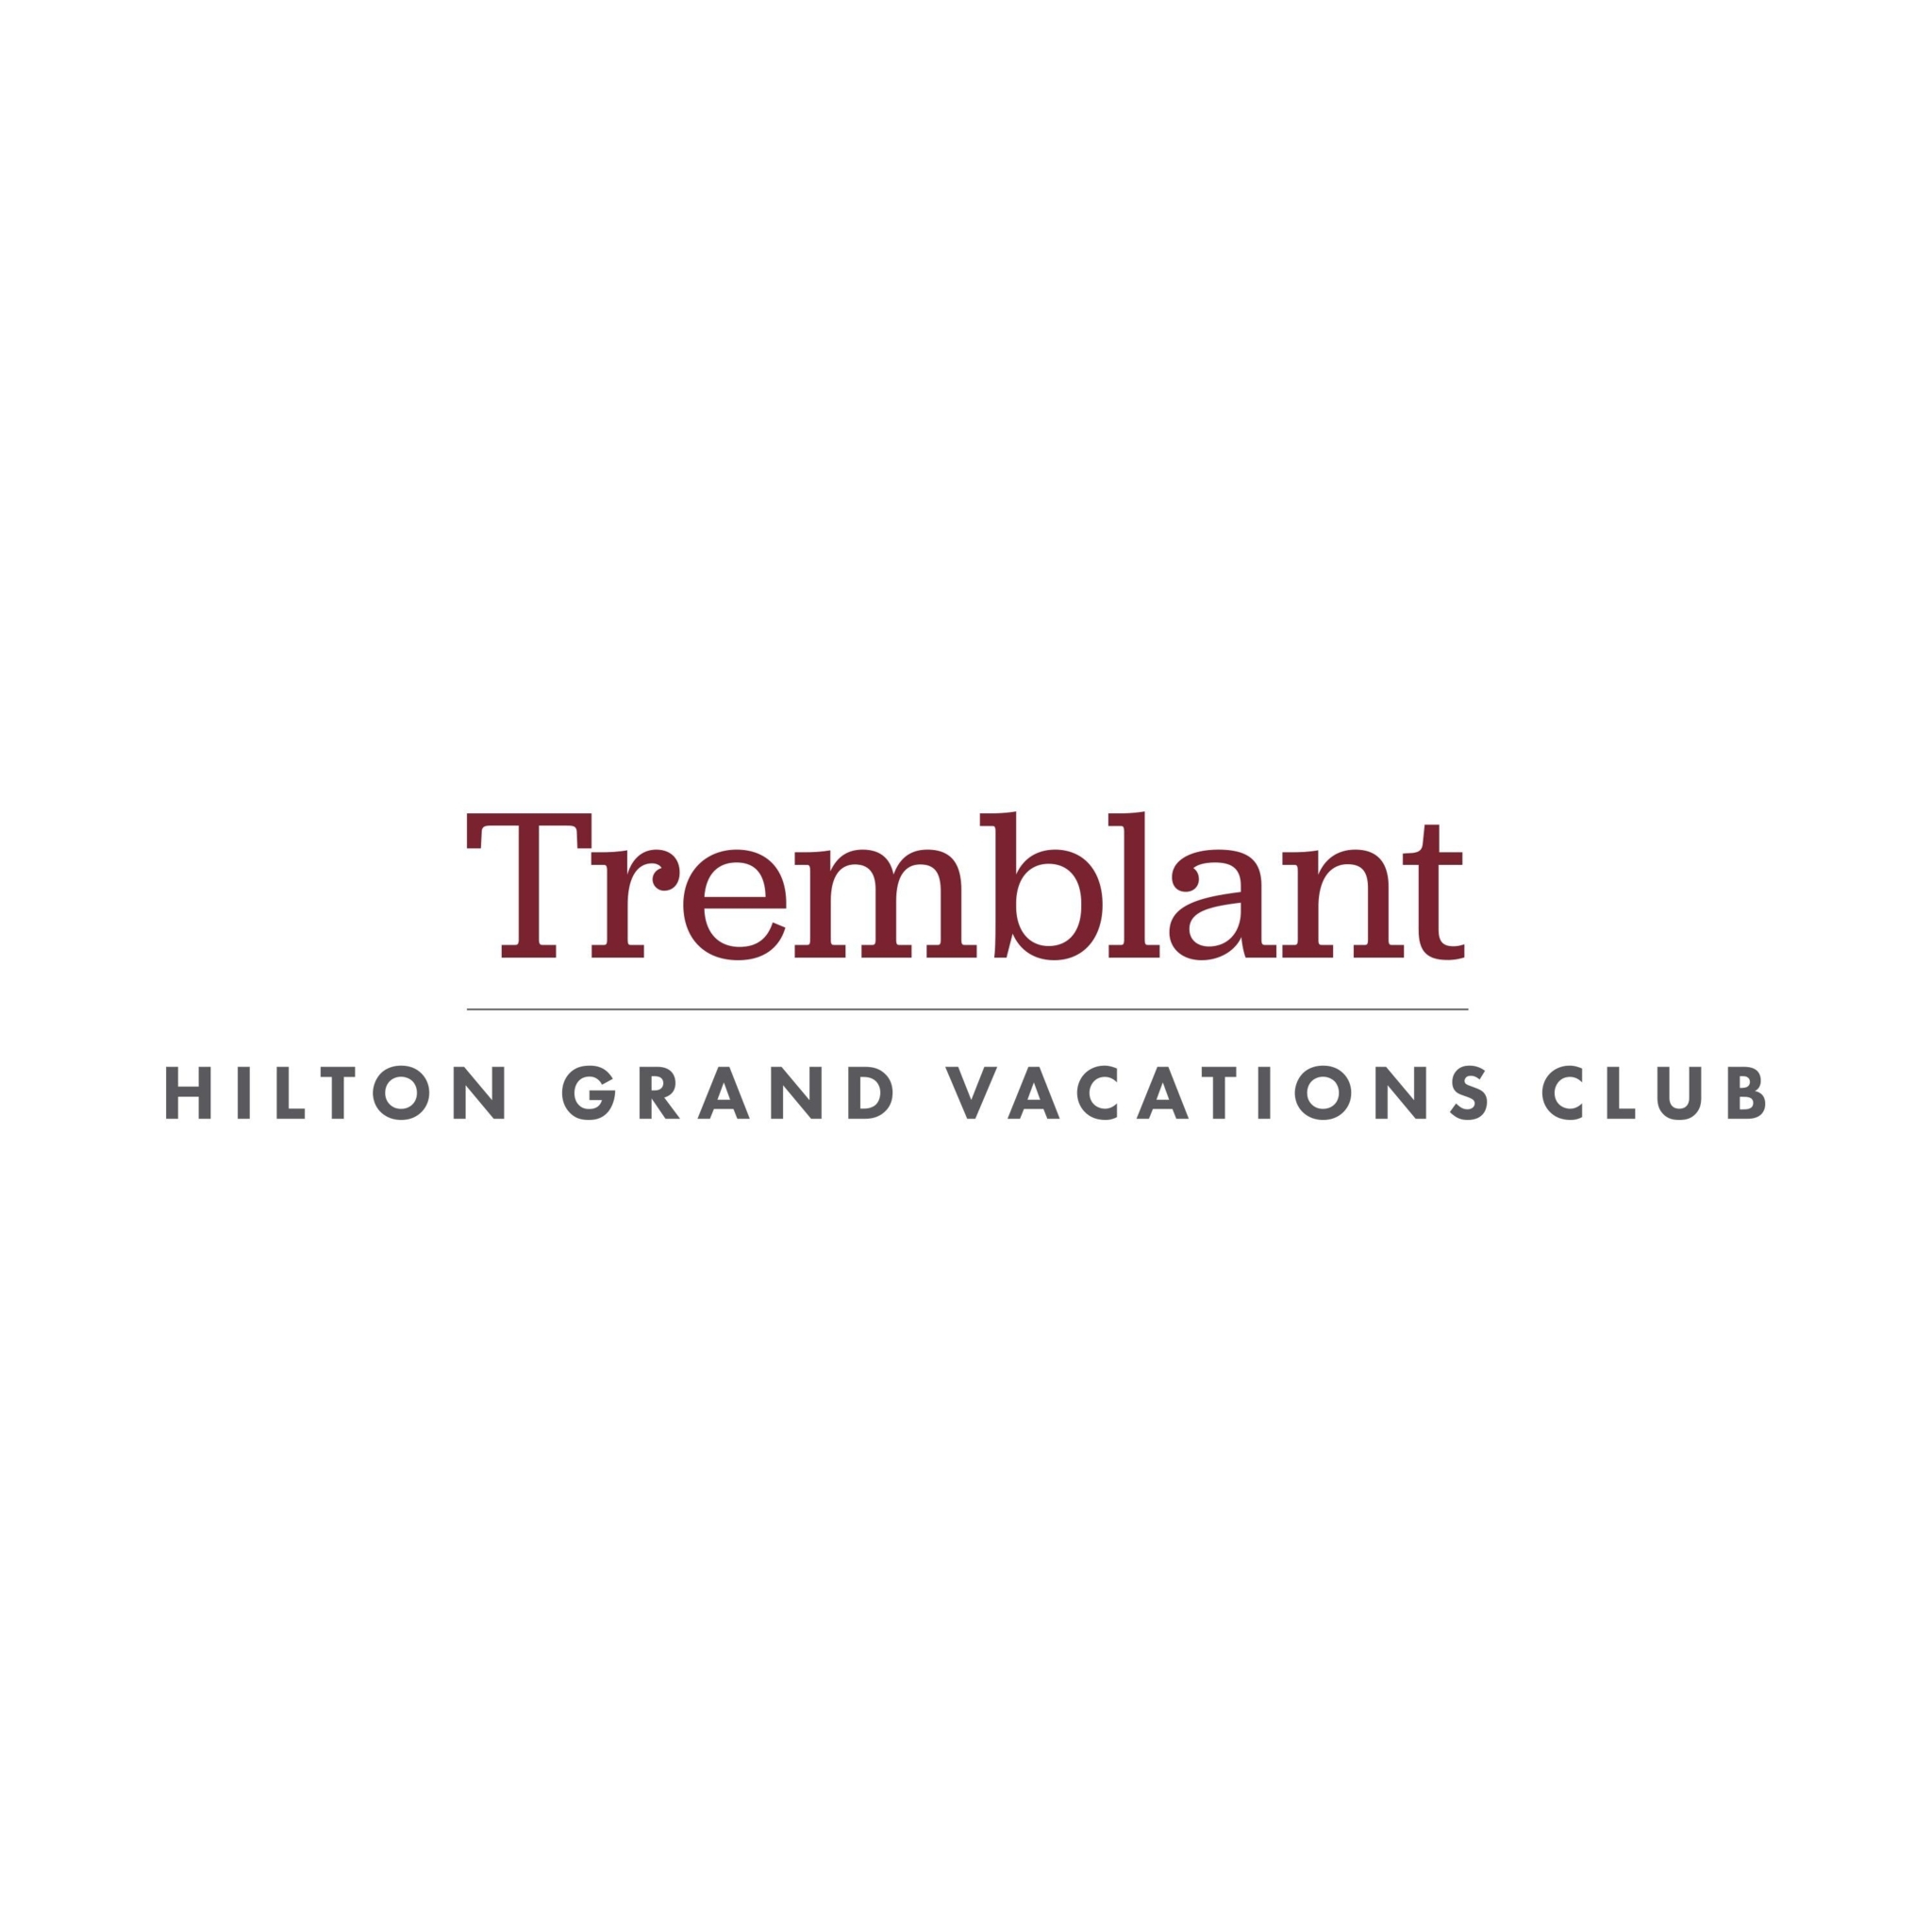 Hilton Grand Vacations Club Tremblant Canada - Hôtels